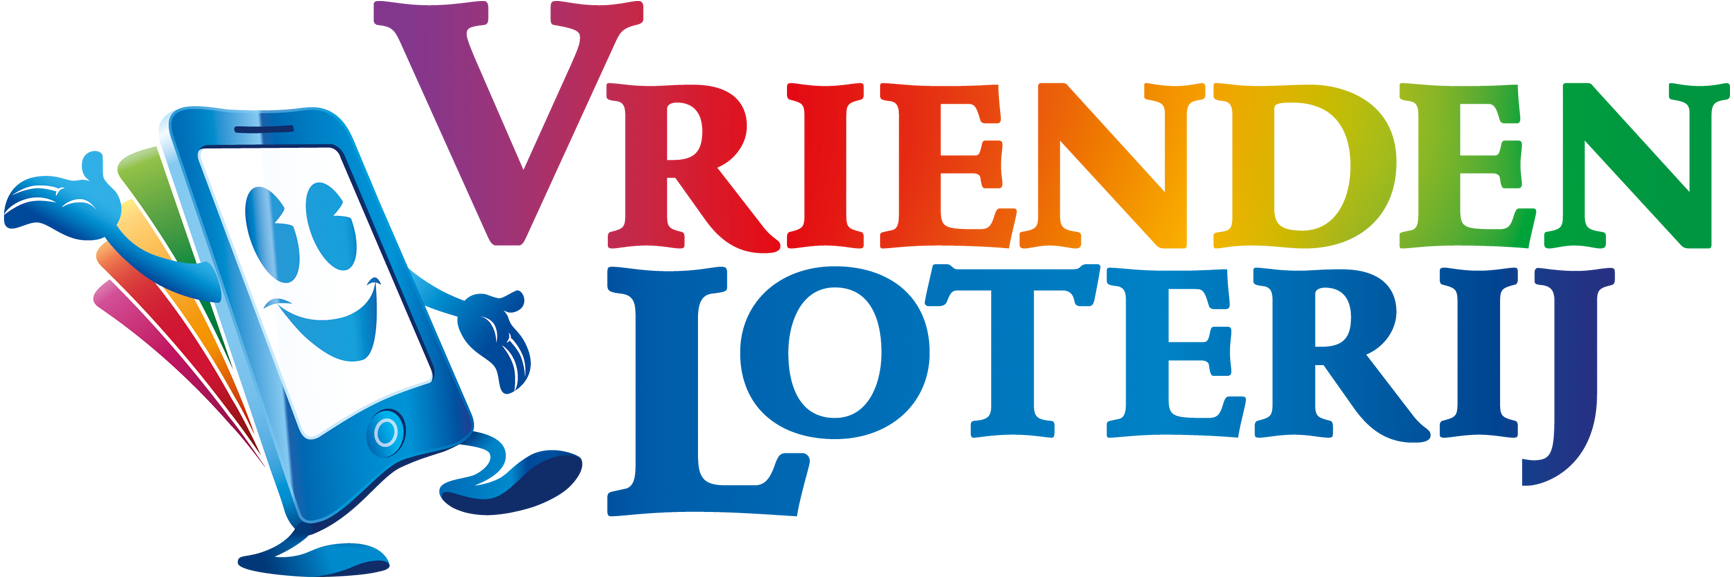 Logo Vriendenloterij